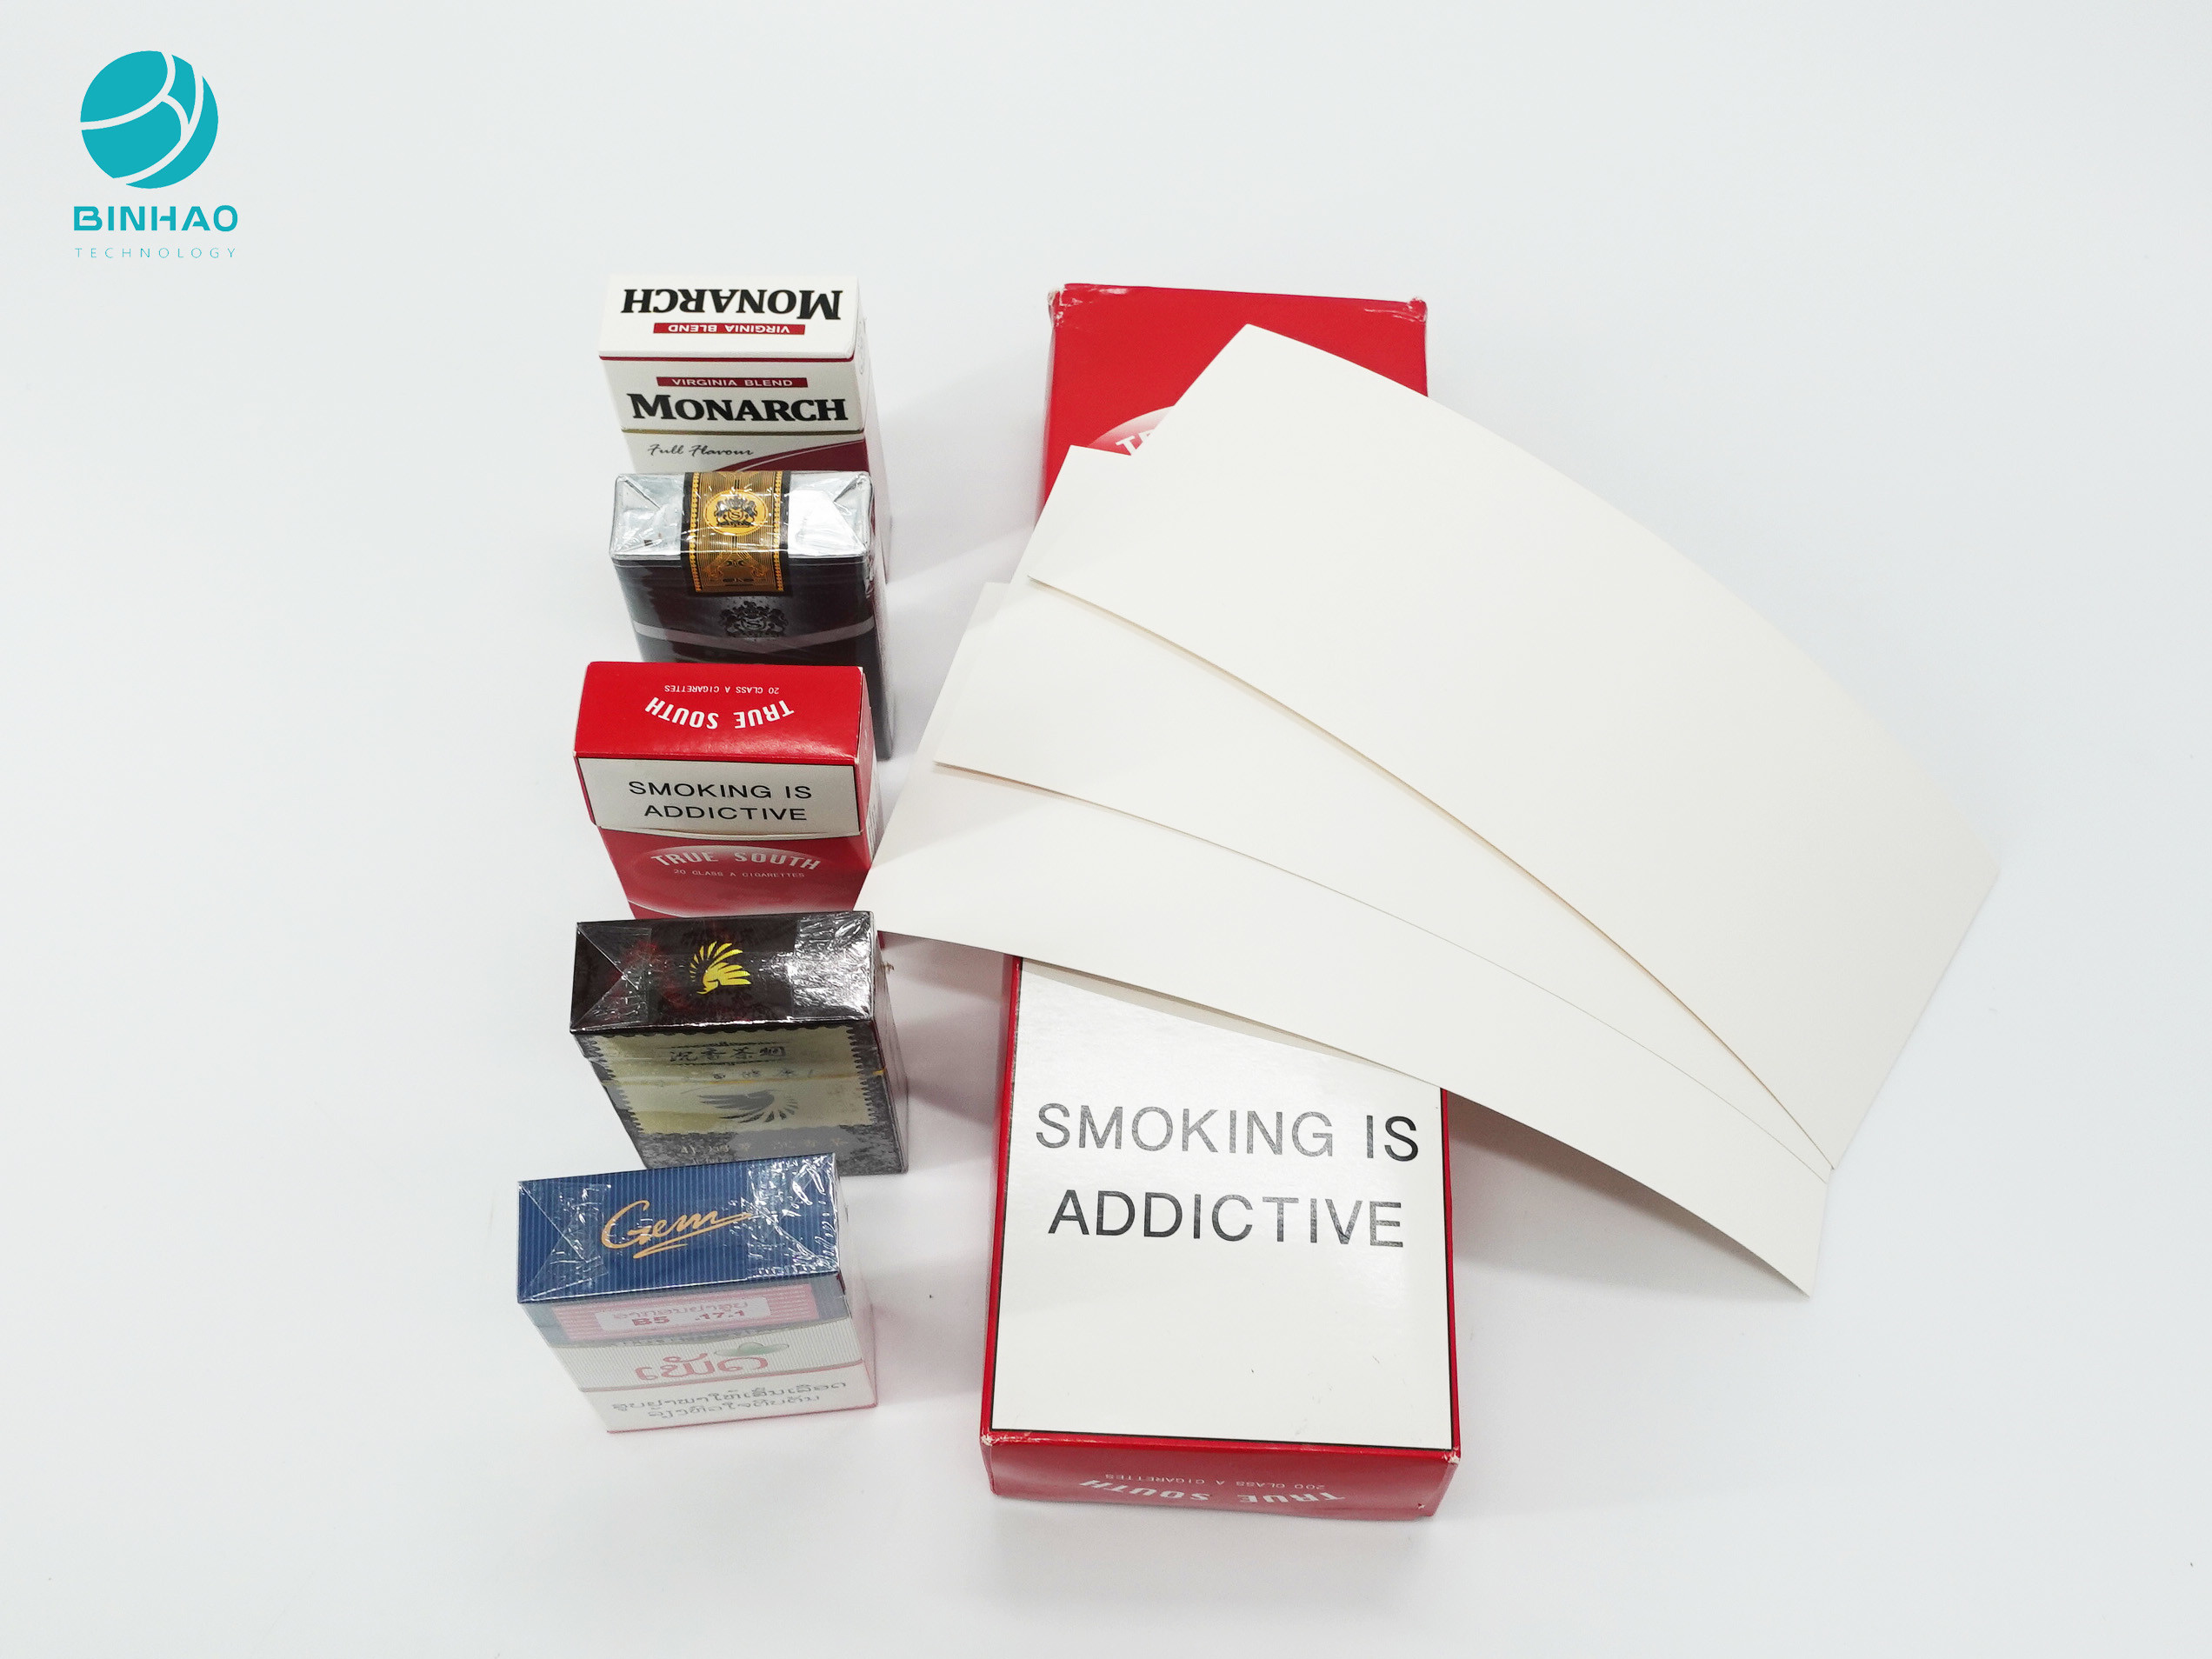 Las cajas de papel de la caja de cartón del paquete del rectángulo con crean el logotipo para requisitos particulares grabado en relieve